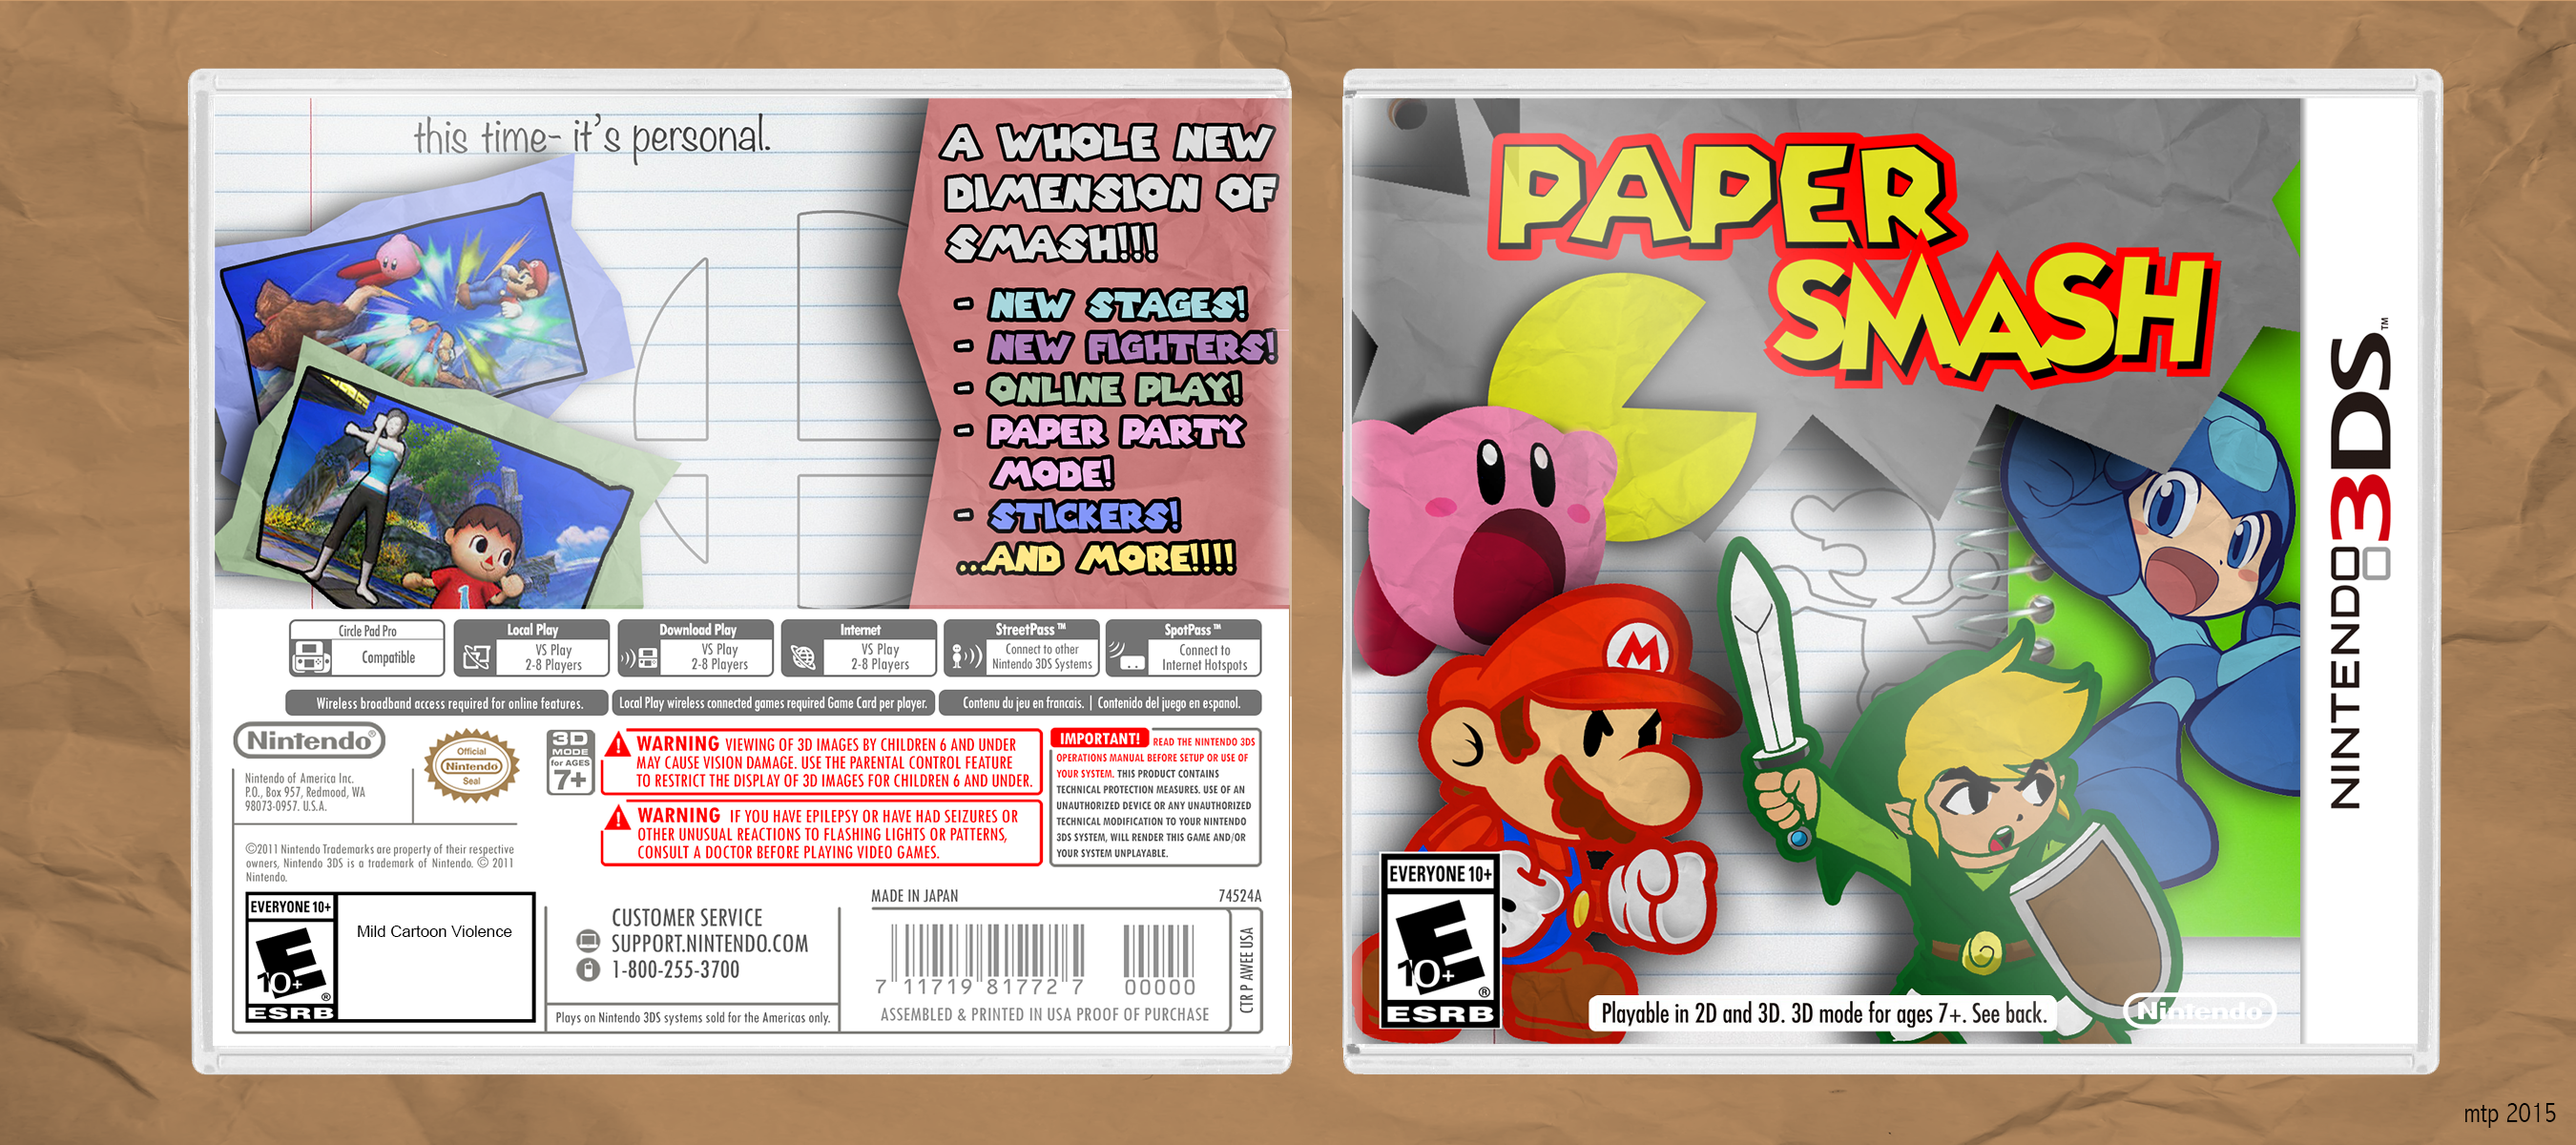 Paper Smash box cover